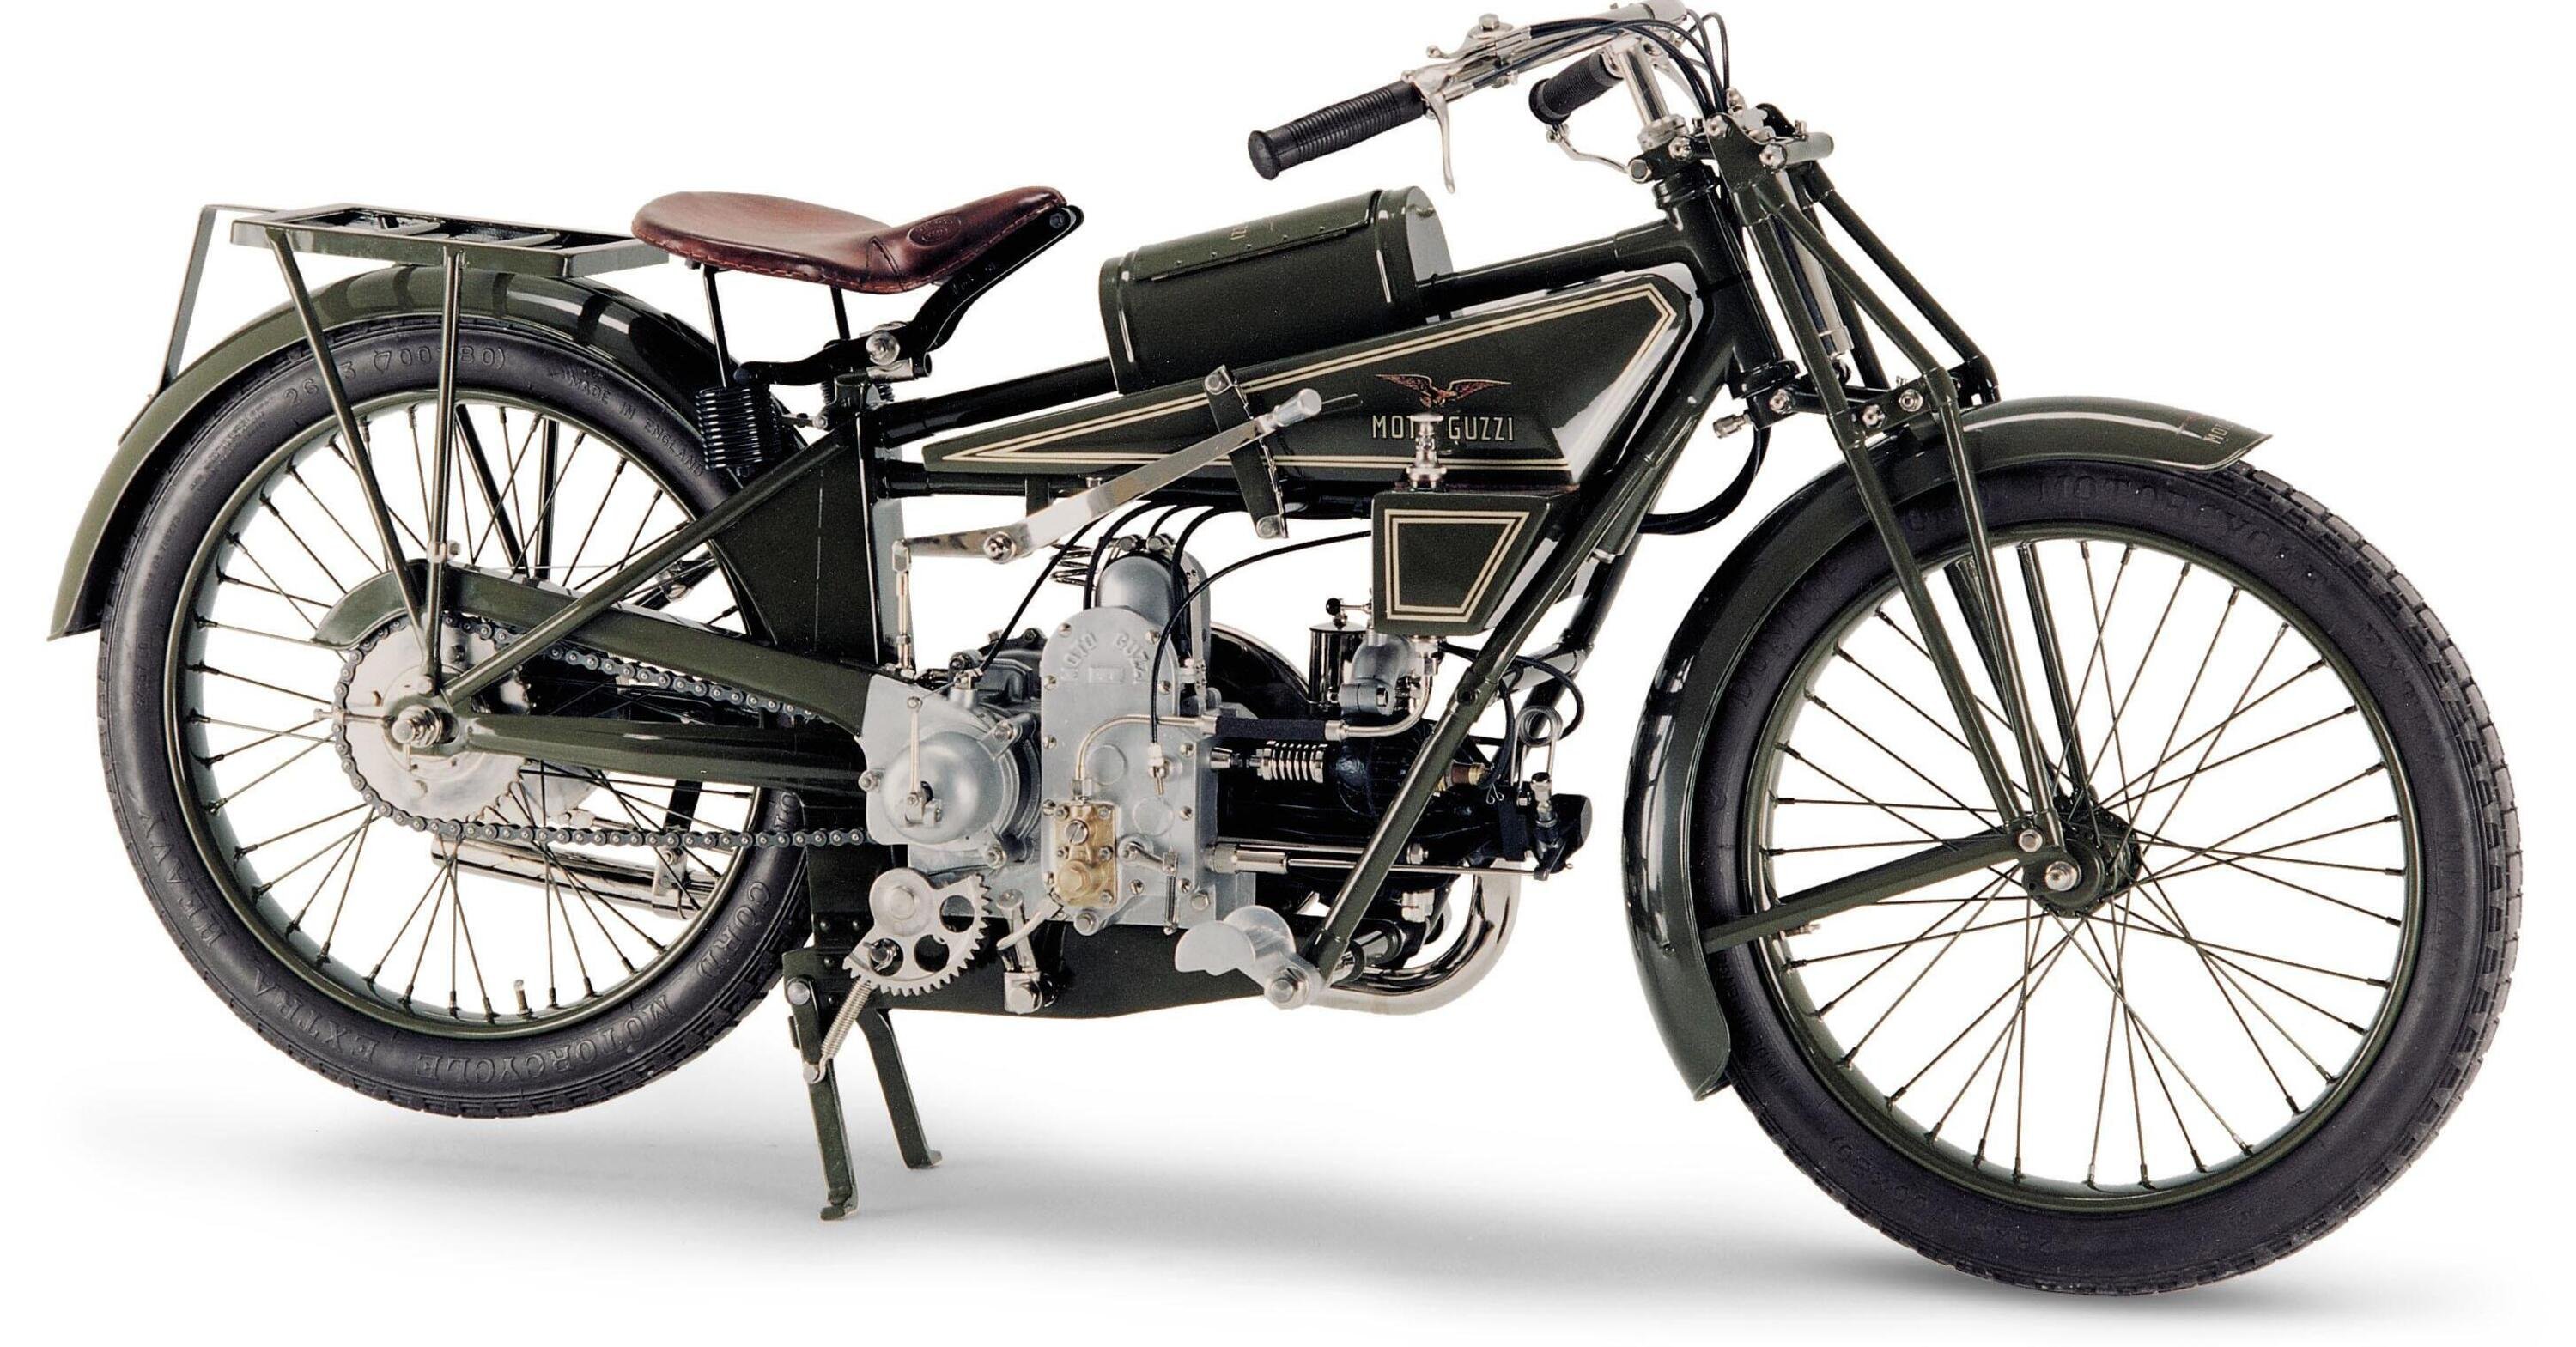 Le Moto Guzzi storiche in una mostra itinerante per il Centenario. Si parte da Milano